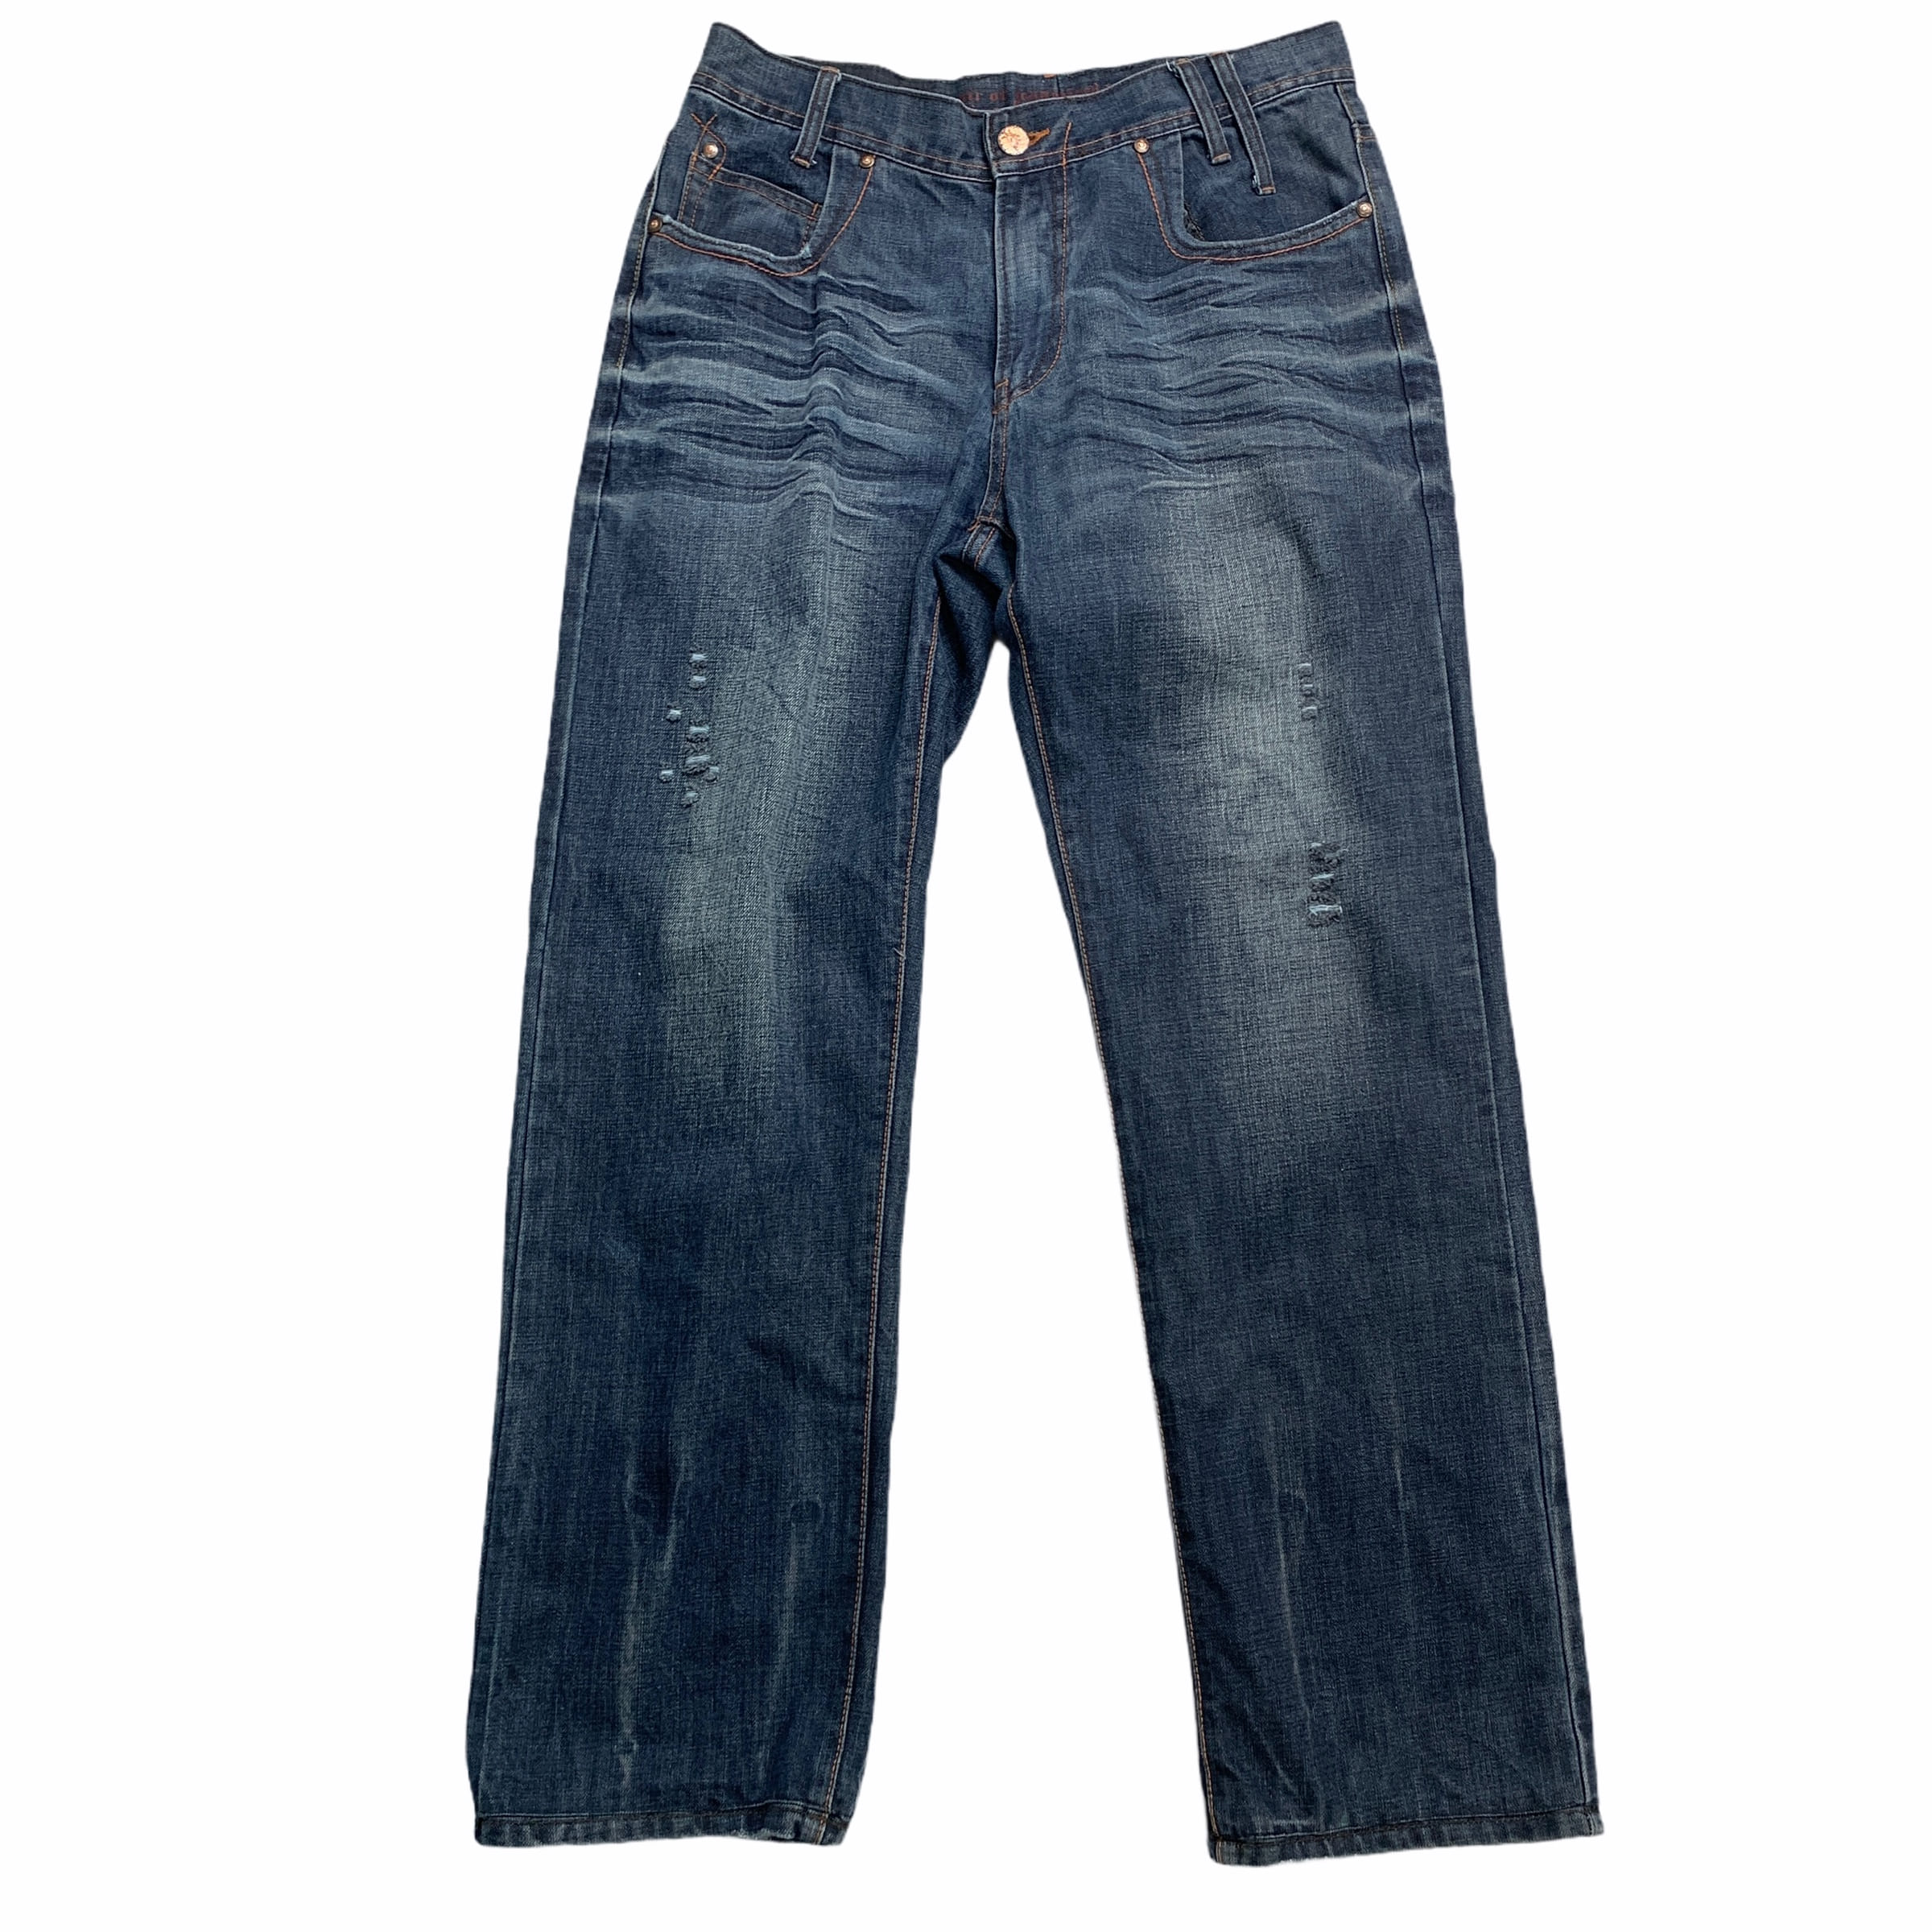 [Levis] (Vintage) 423 Denim pants - Size 34/32